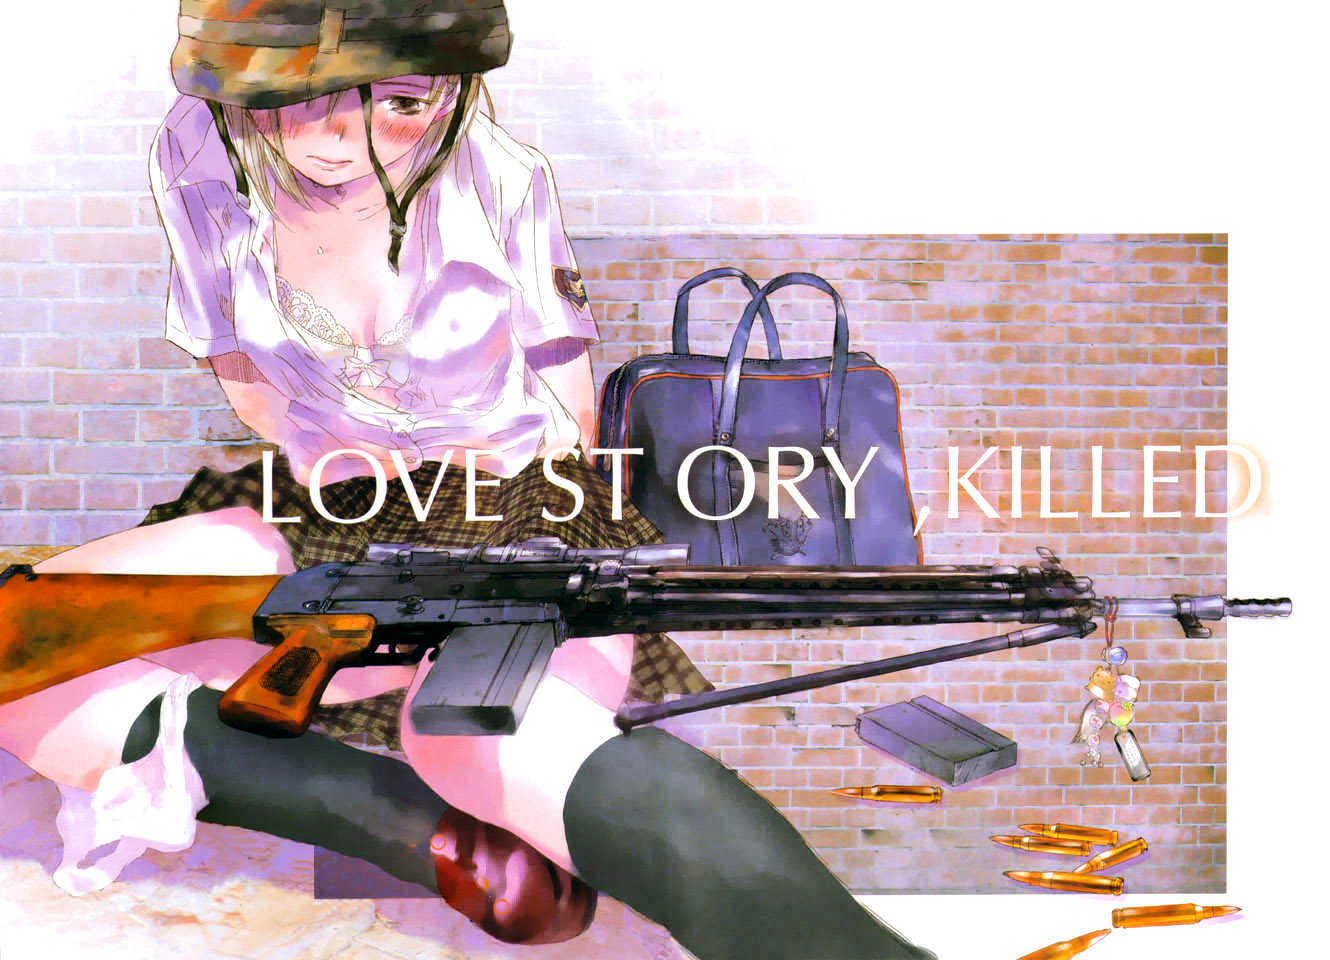 Моя девушка - совершенное оружие (SAIKANO). Killers story